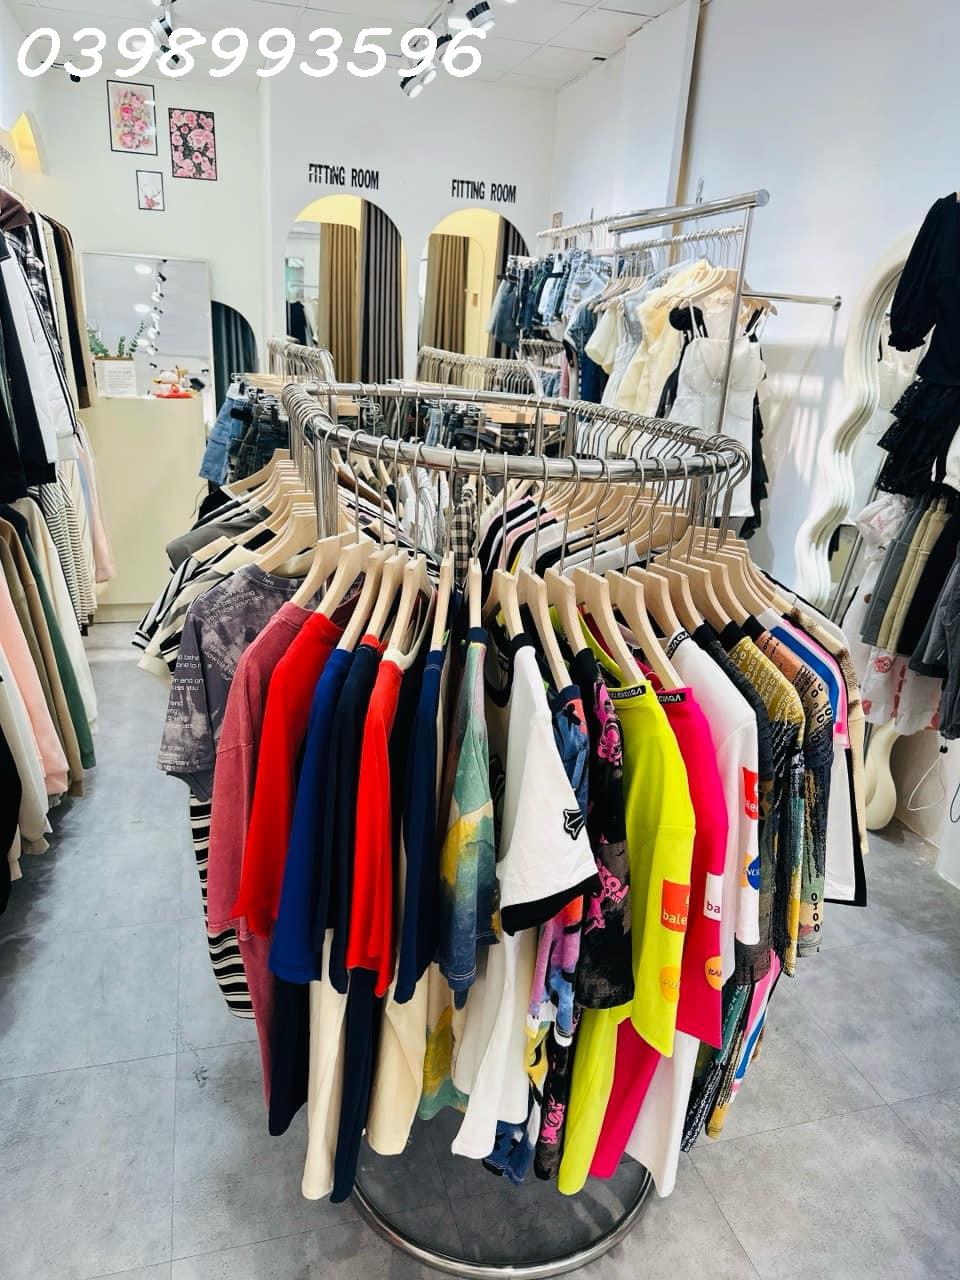 Cho thuê mặt bằng đang mở shop quần áo - Địa chỉ: 435 Huỳnh Văn Bánh, p13, quận Phú Nhuận, Thành phố Hồ Chí Minh